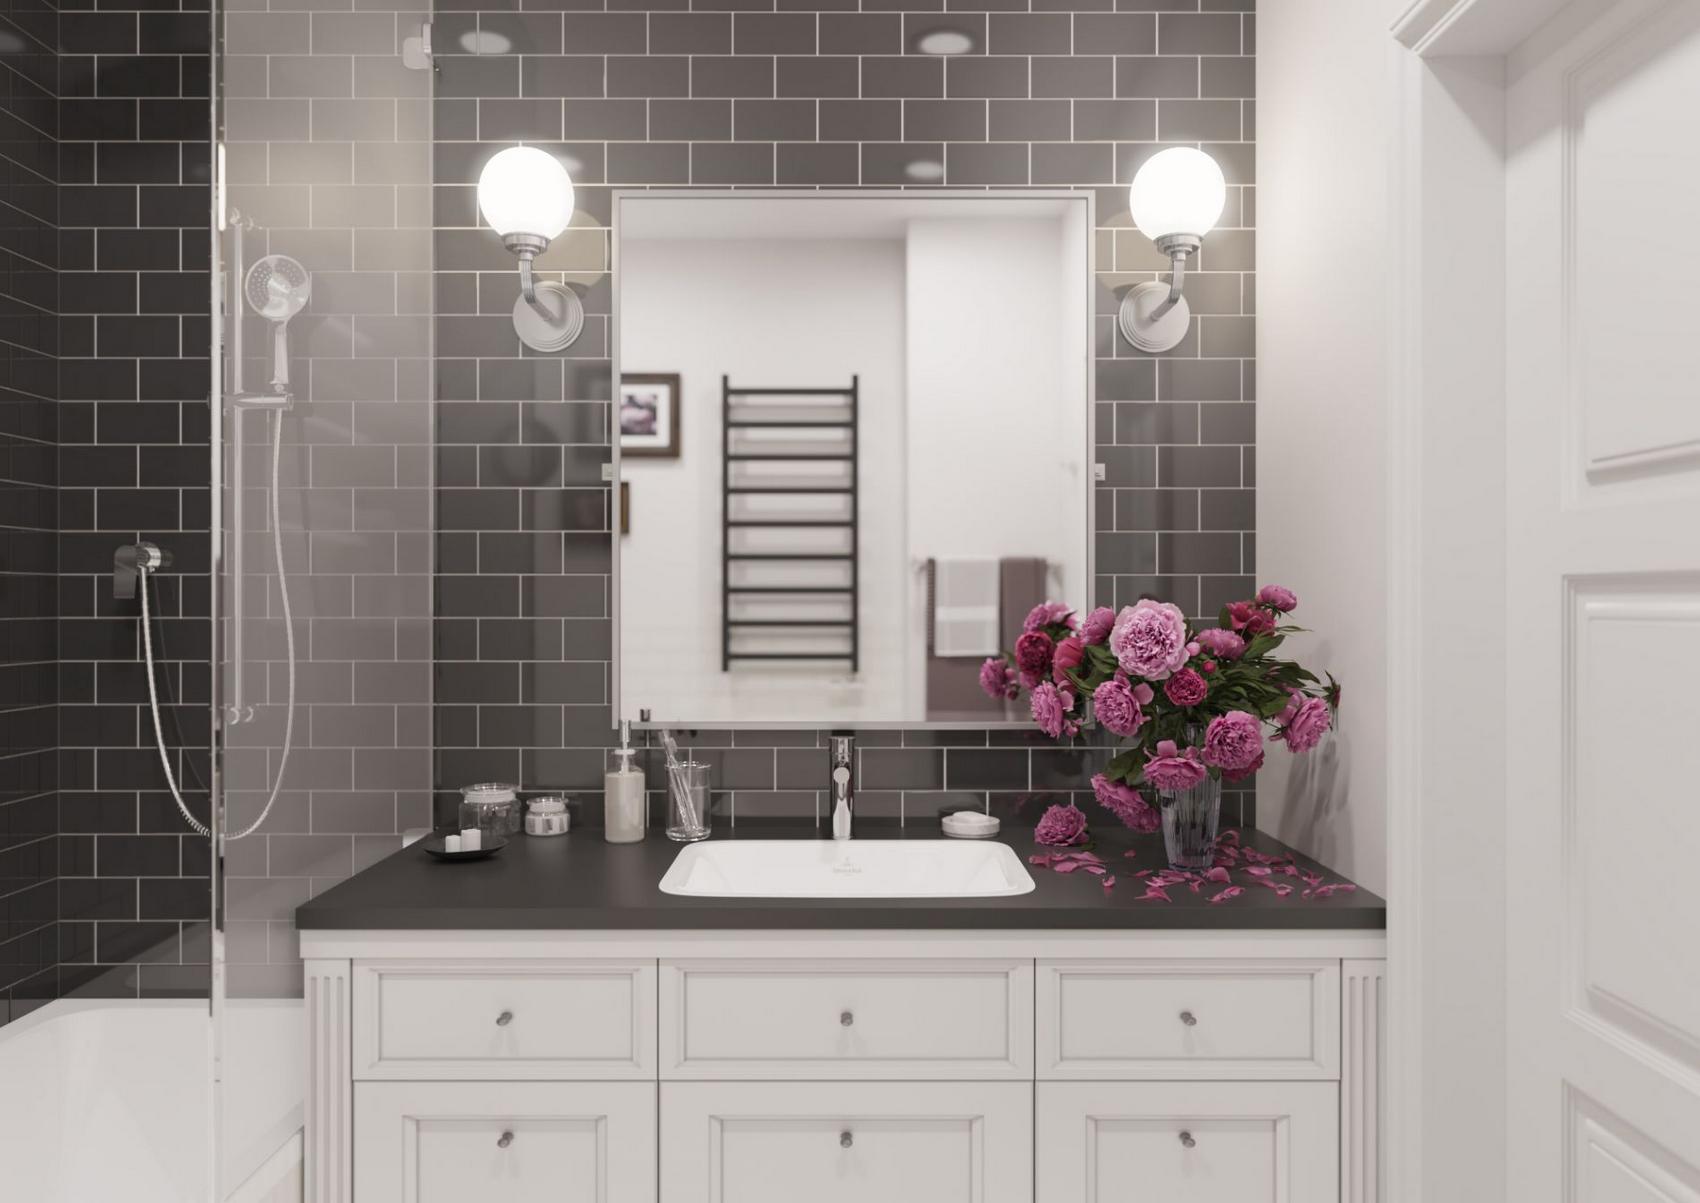 Tấm gương vuông vức cùng đèn gắn tường tạo sự phản chiếu cho căn phòng thêm rộng.  Kiểu tủ lưu trữ cổ điển kết hợp bồn rửa và lọ hoa khoe sắc rực rỡ mang đến vẻ ấm áp cho căn phòng.